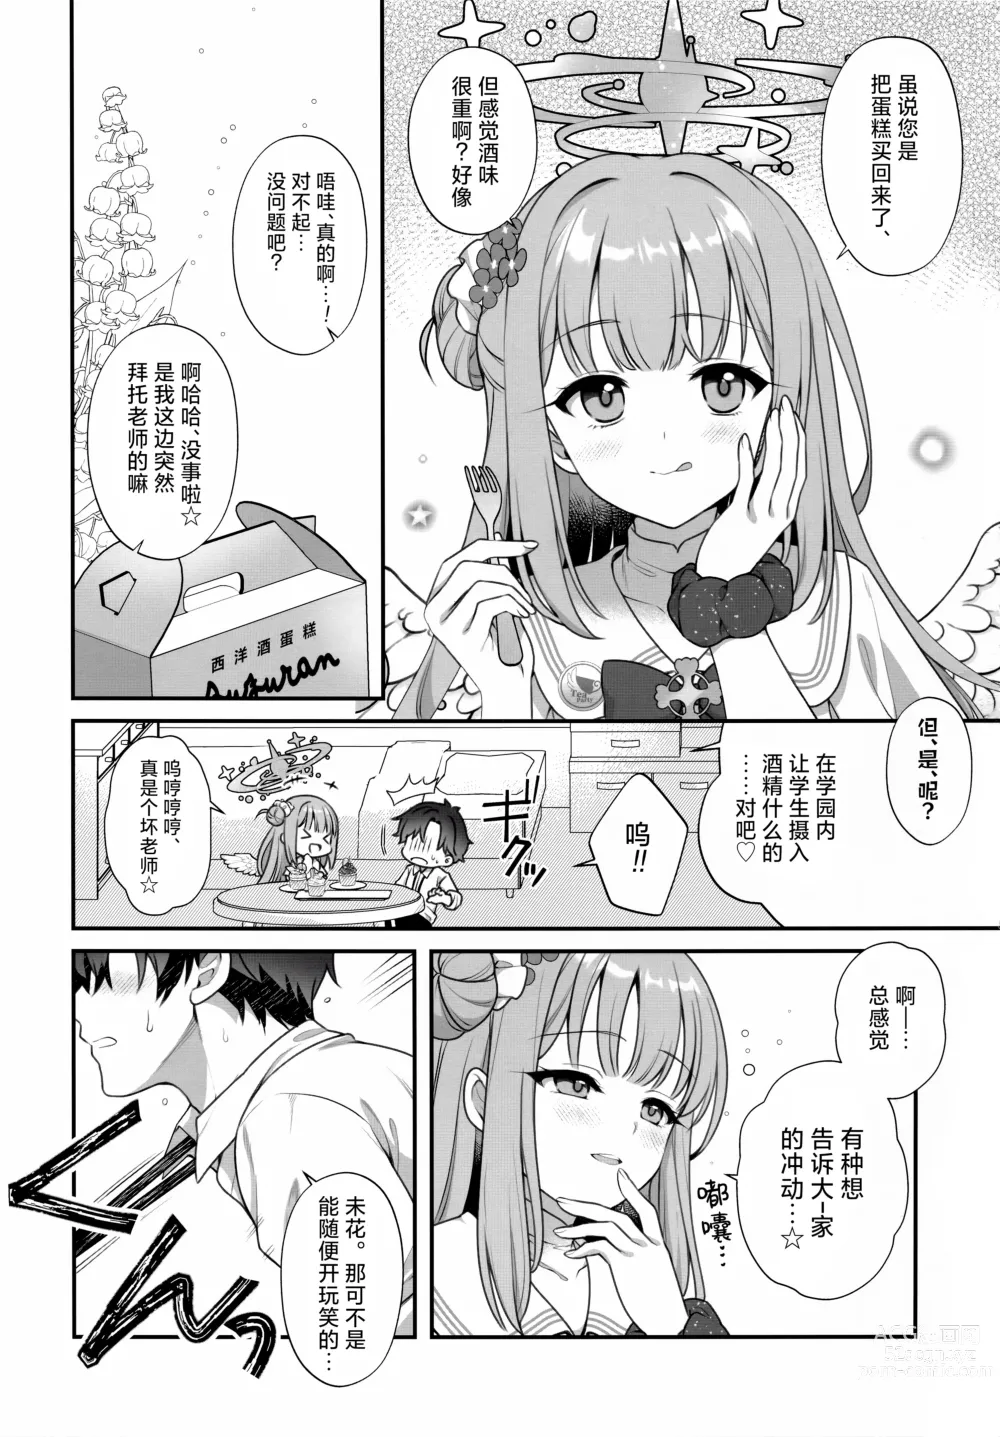 Page 4 of doujinshi 未花与秘密的茶会时间